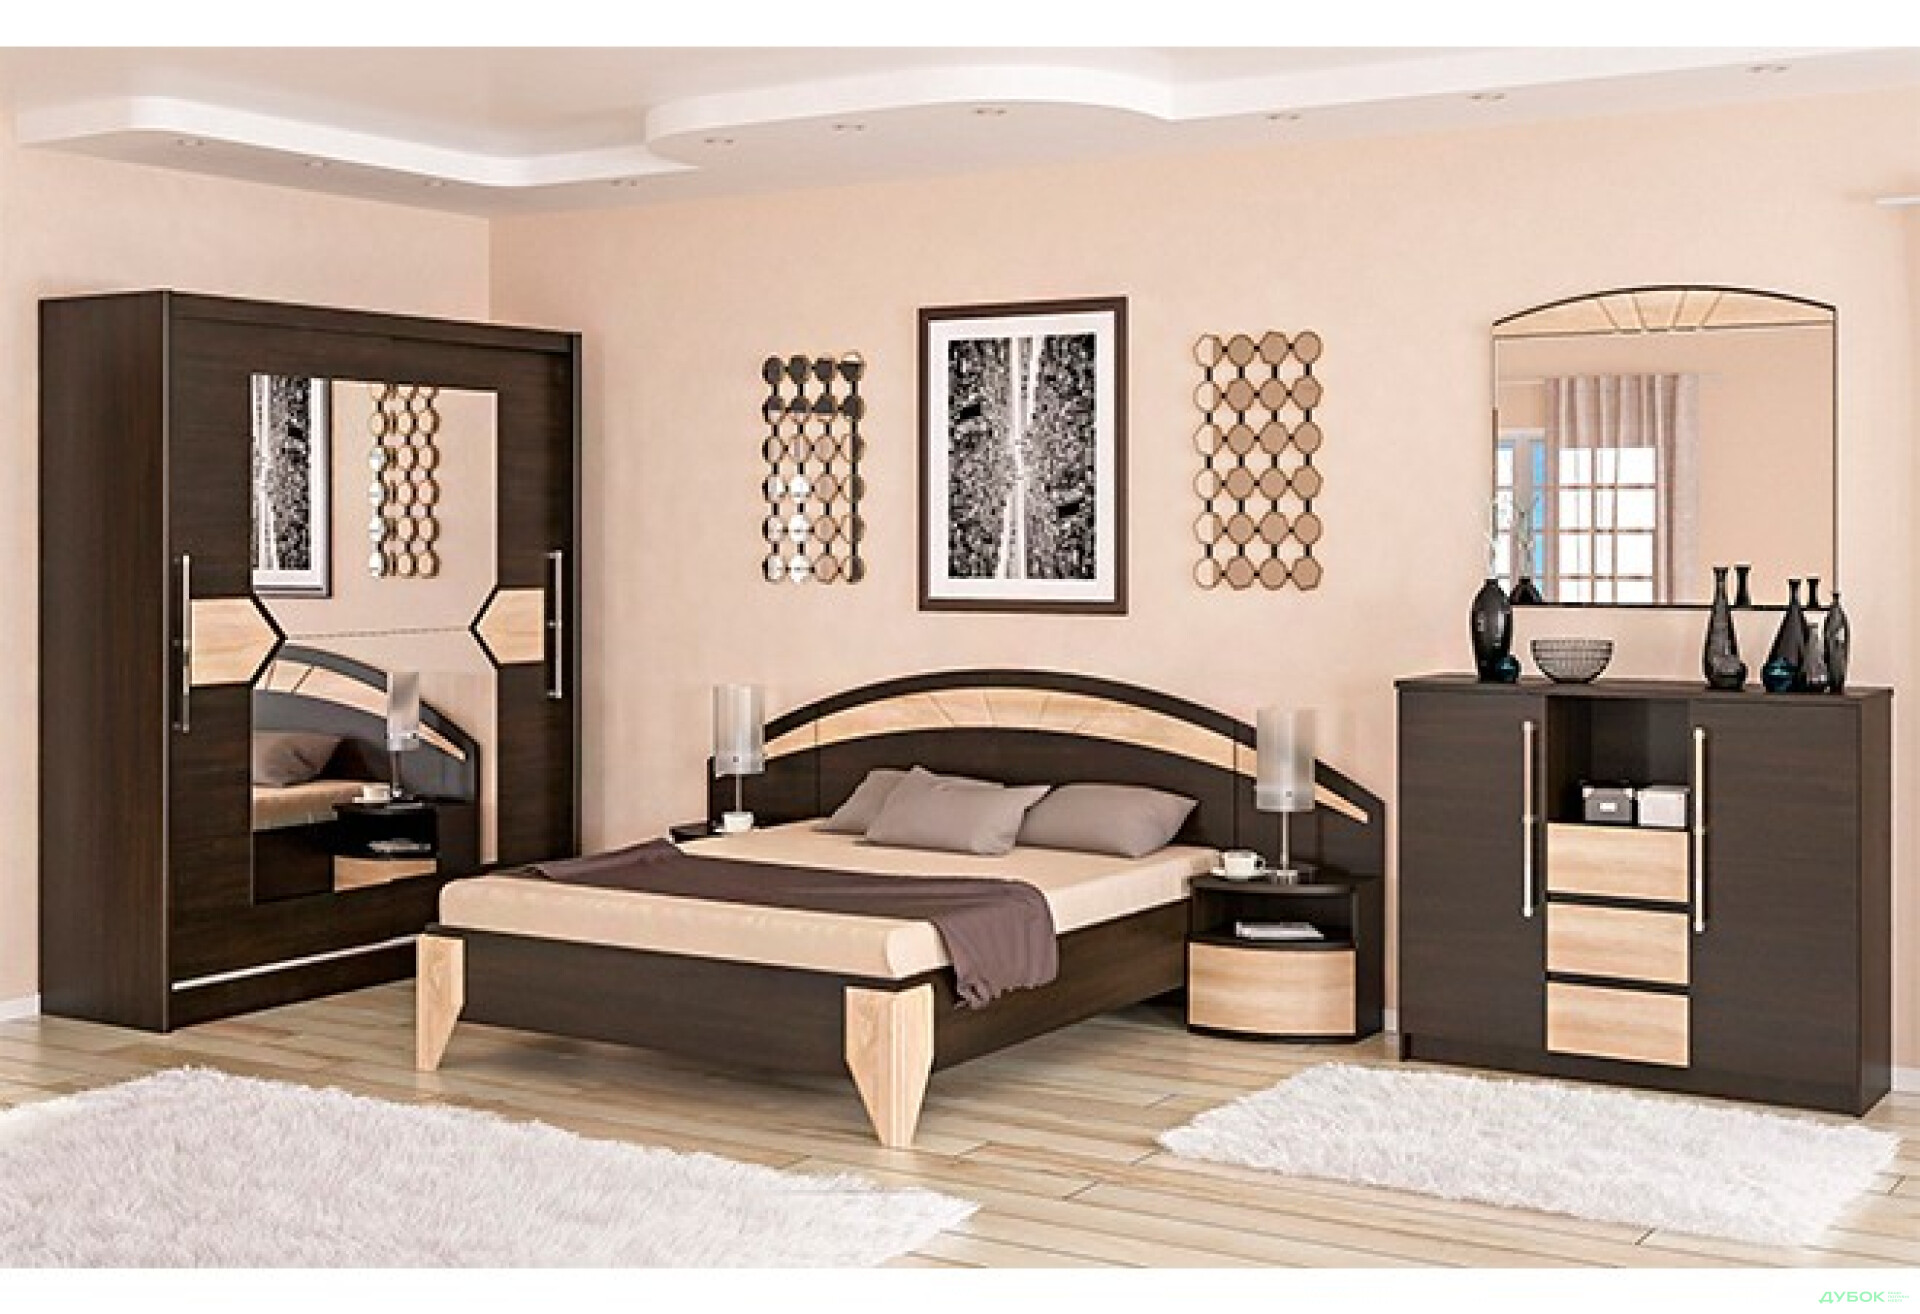 Фото 1 - Спальня Аляска Комплект з шафою-купе 2Д + комод 4Ш Мебель Сервіс